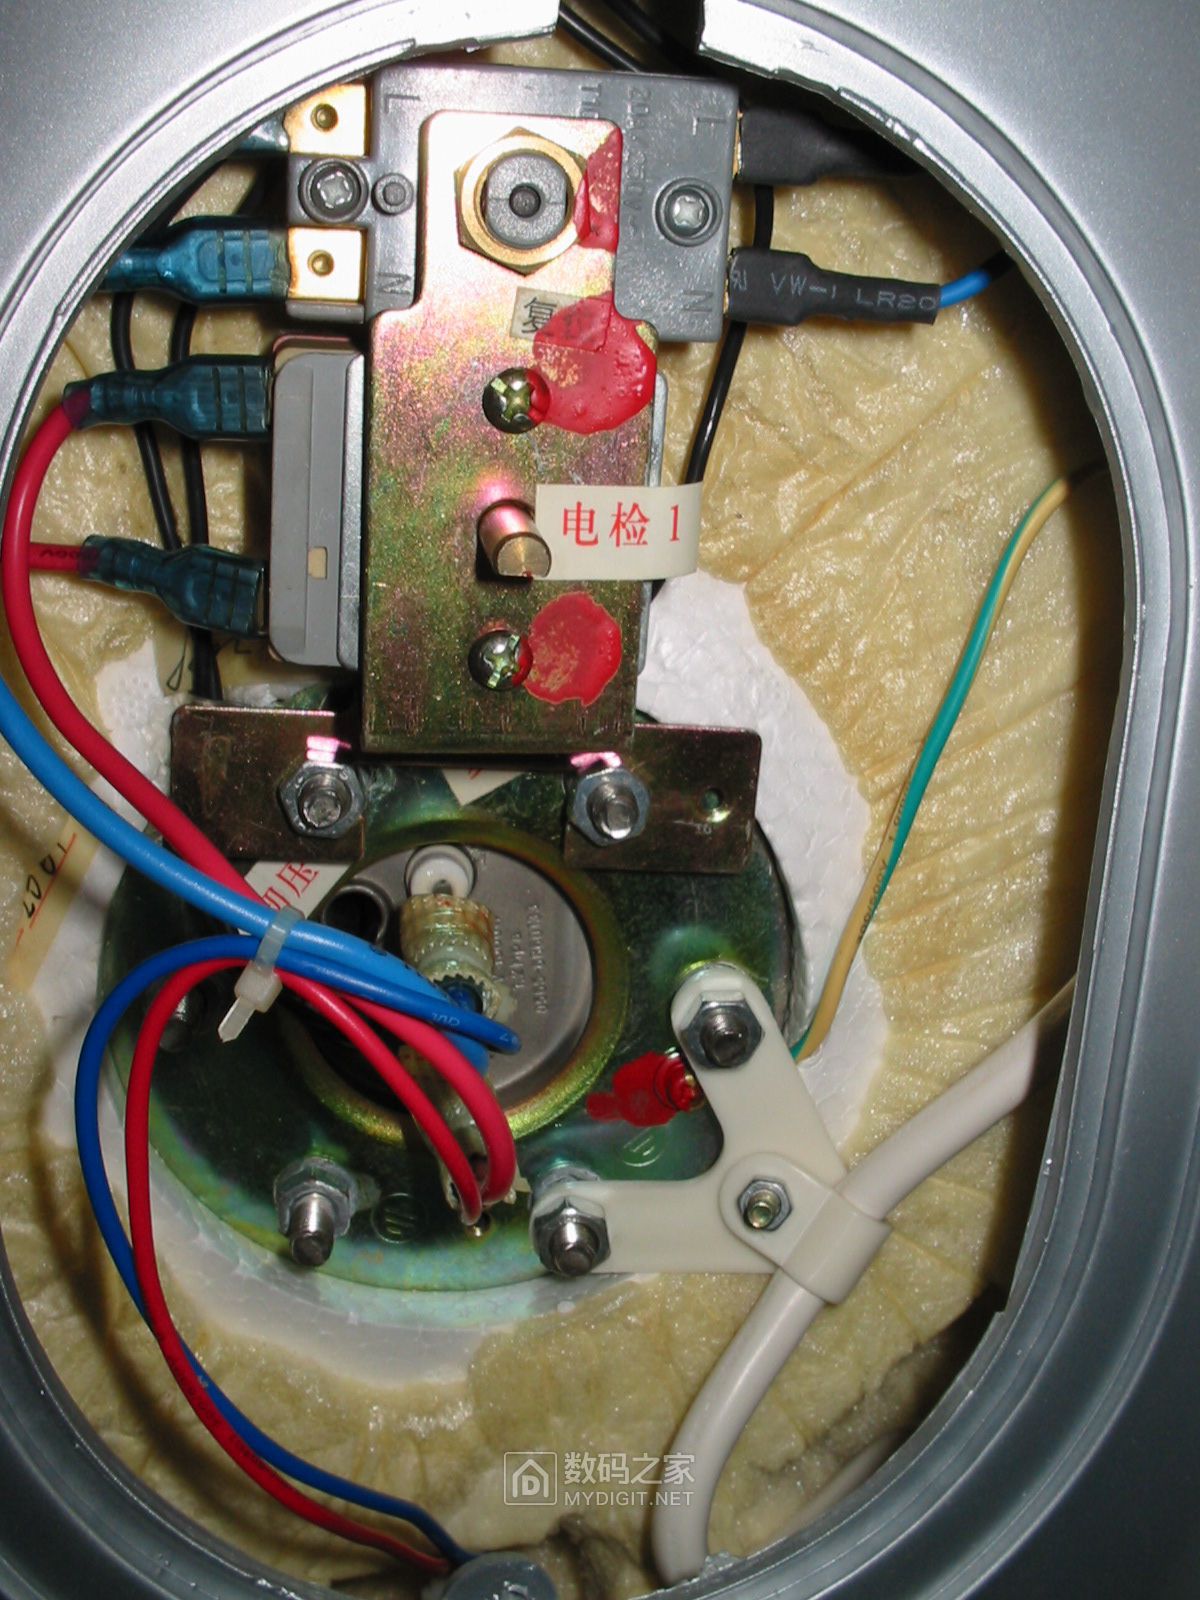 03年买的华帝电热水器想更换镁棒找不到在哪里